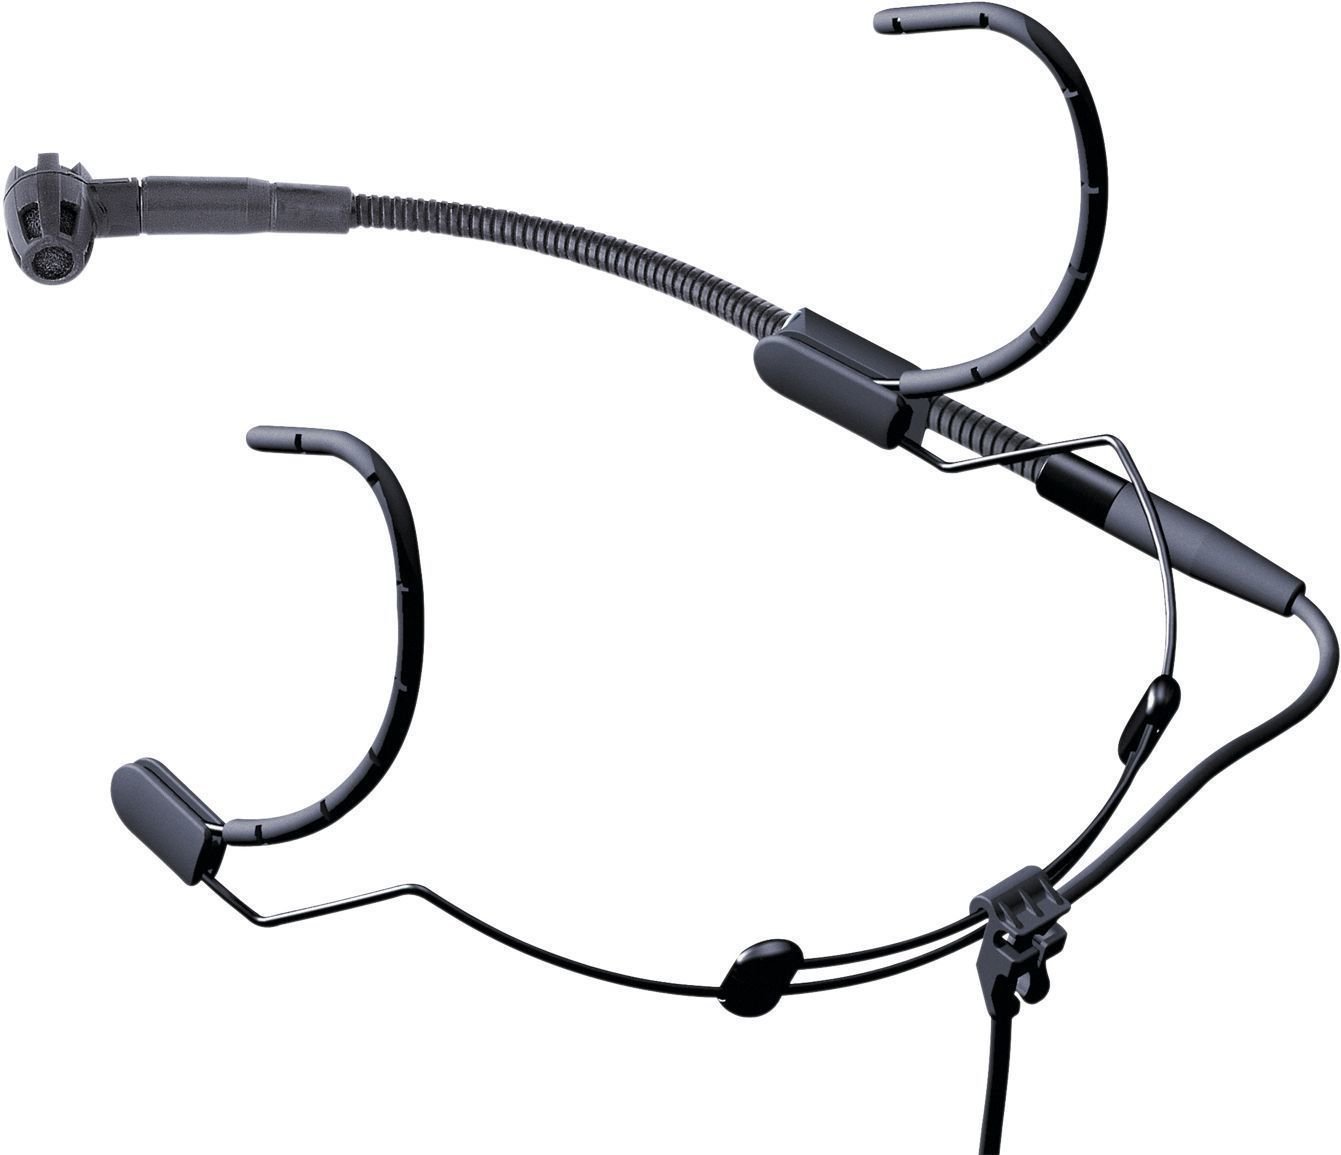 Microfon headset cu condensator AKG C 520 L Microfon headset cu condensator